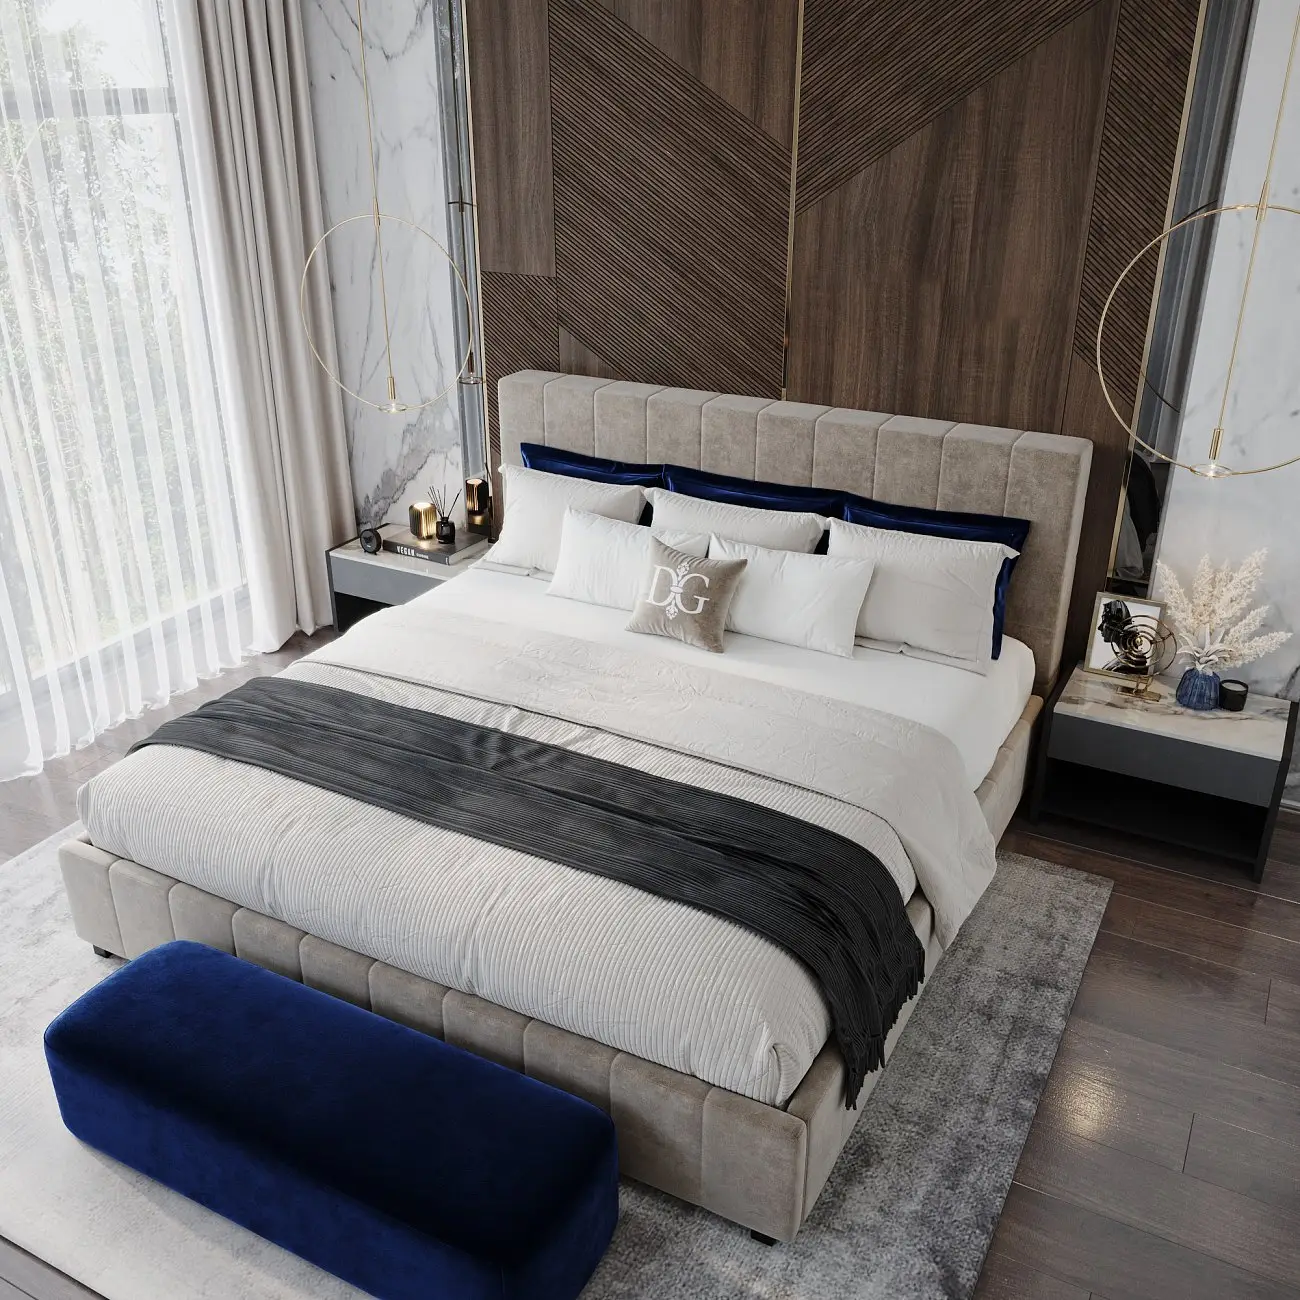 Double bed 180x200 grey-beige Shining Modern